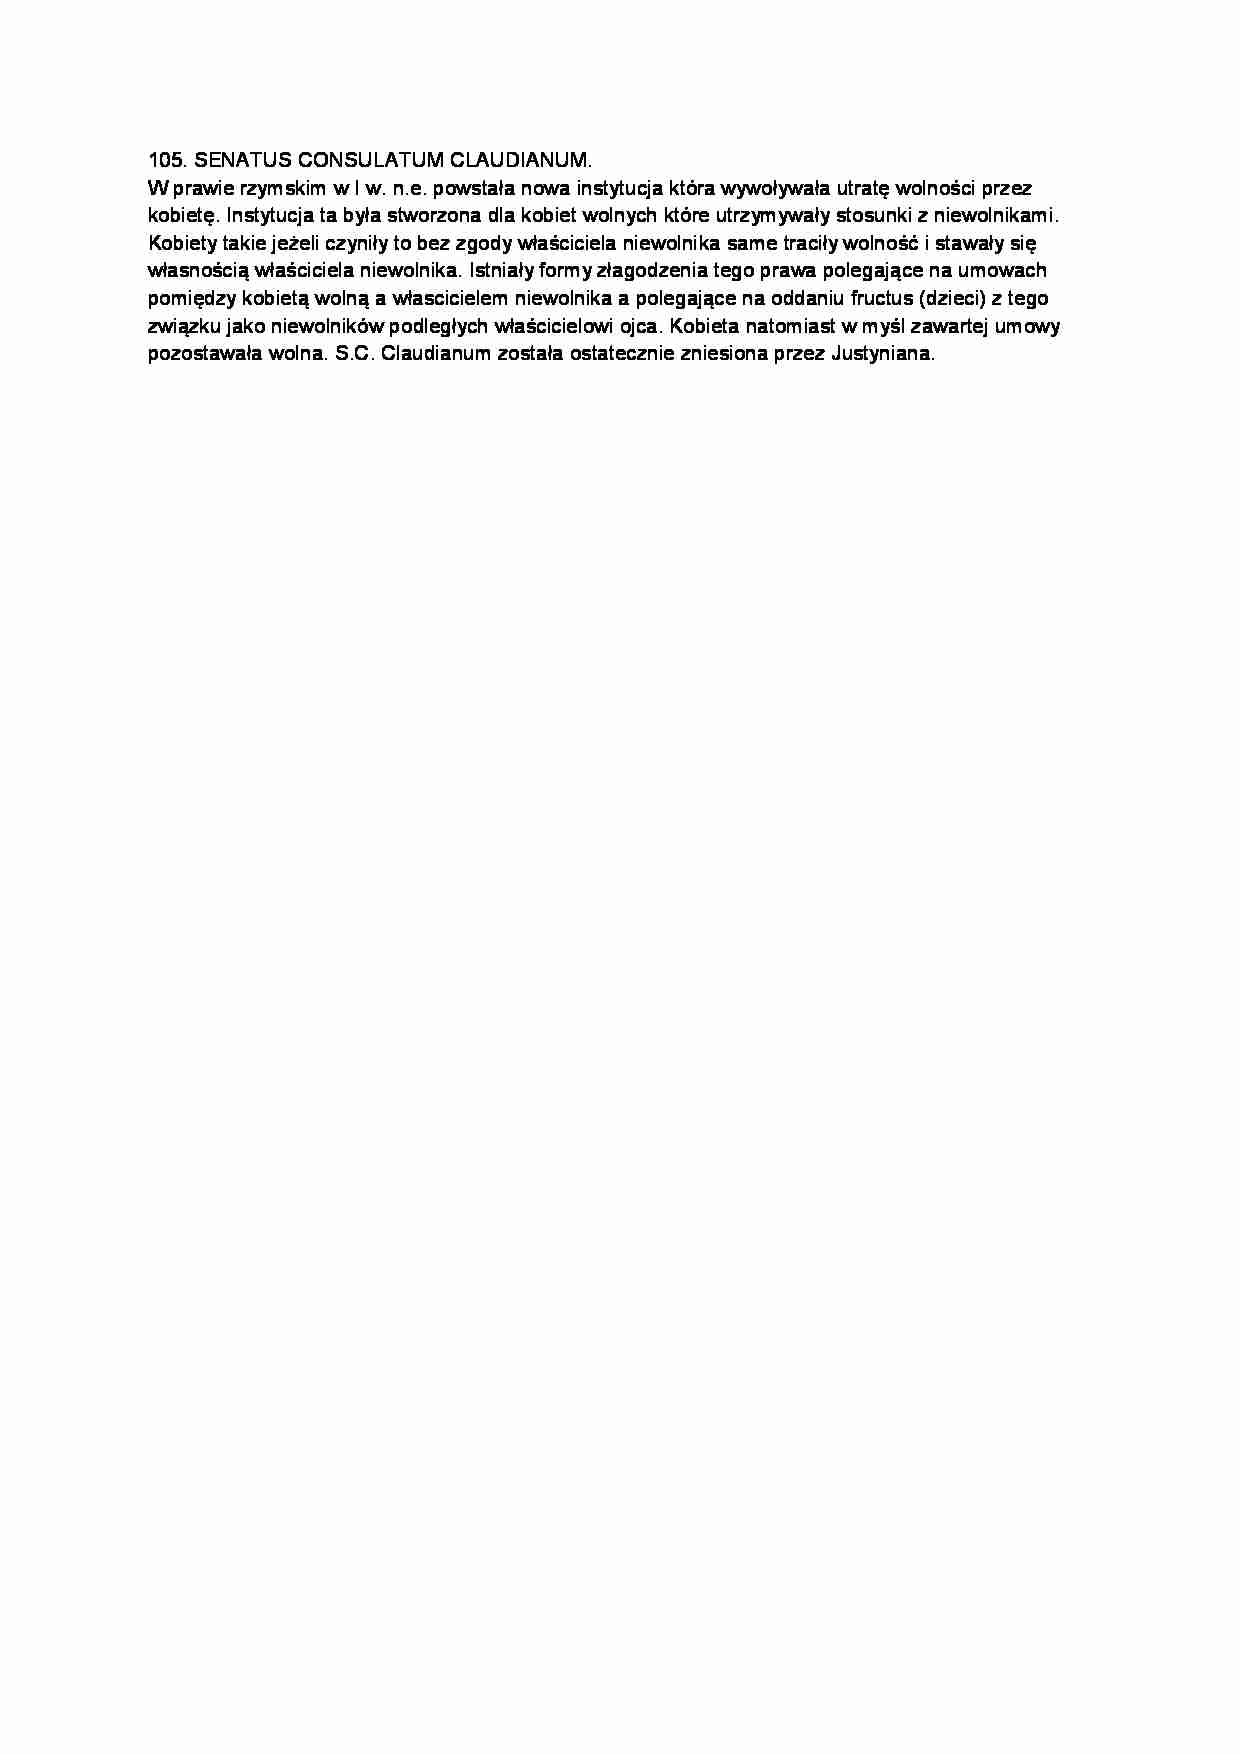 SENATUS CONSULATUM CLAUDIANUM-opracowanie - strona 1